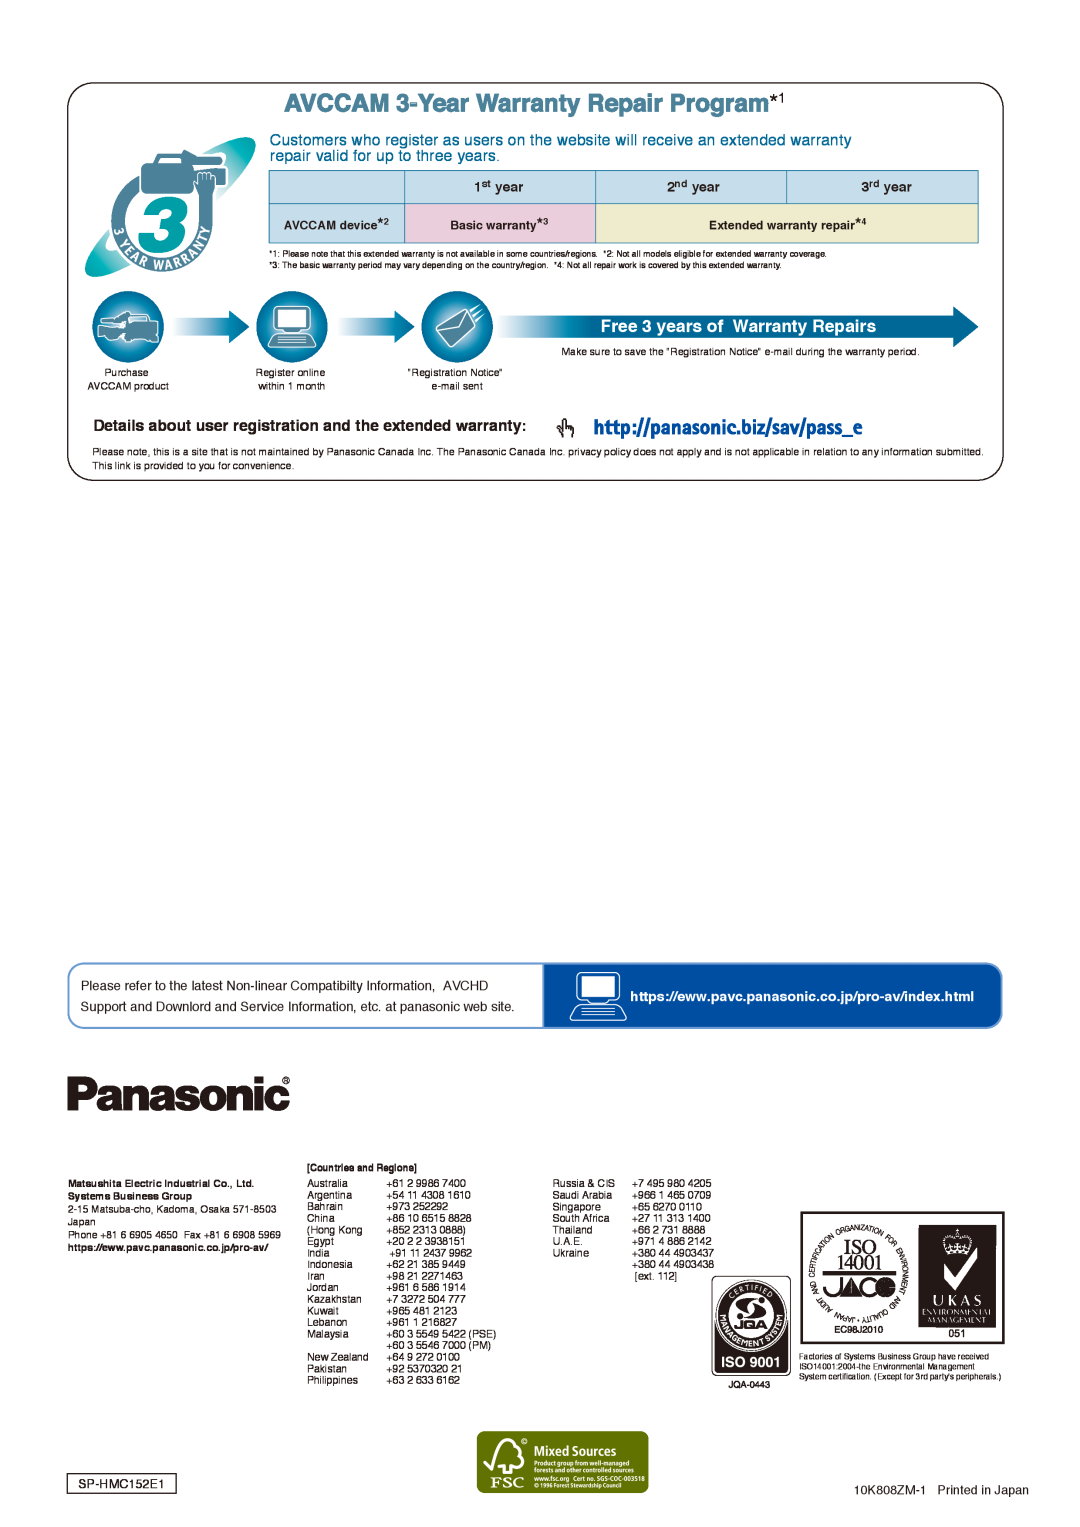 Panasonic AG-HMC152 Free 3 years of Warranty Repairs, AVCCAM 3-Year Warranty Repair Program*1, st year, nd year, rd year 